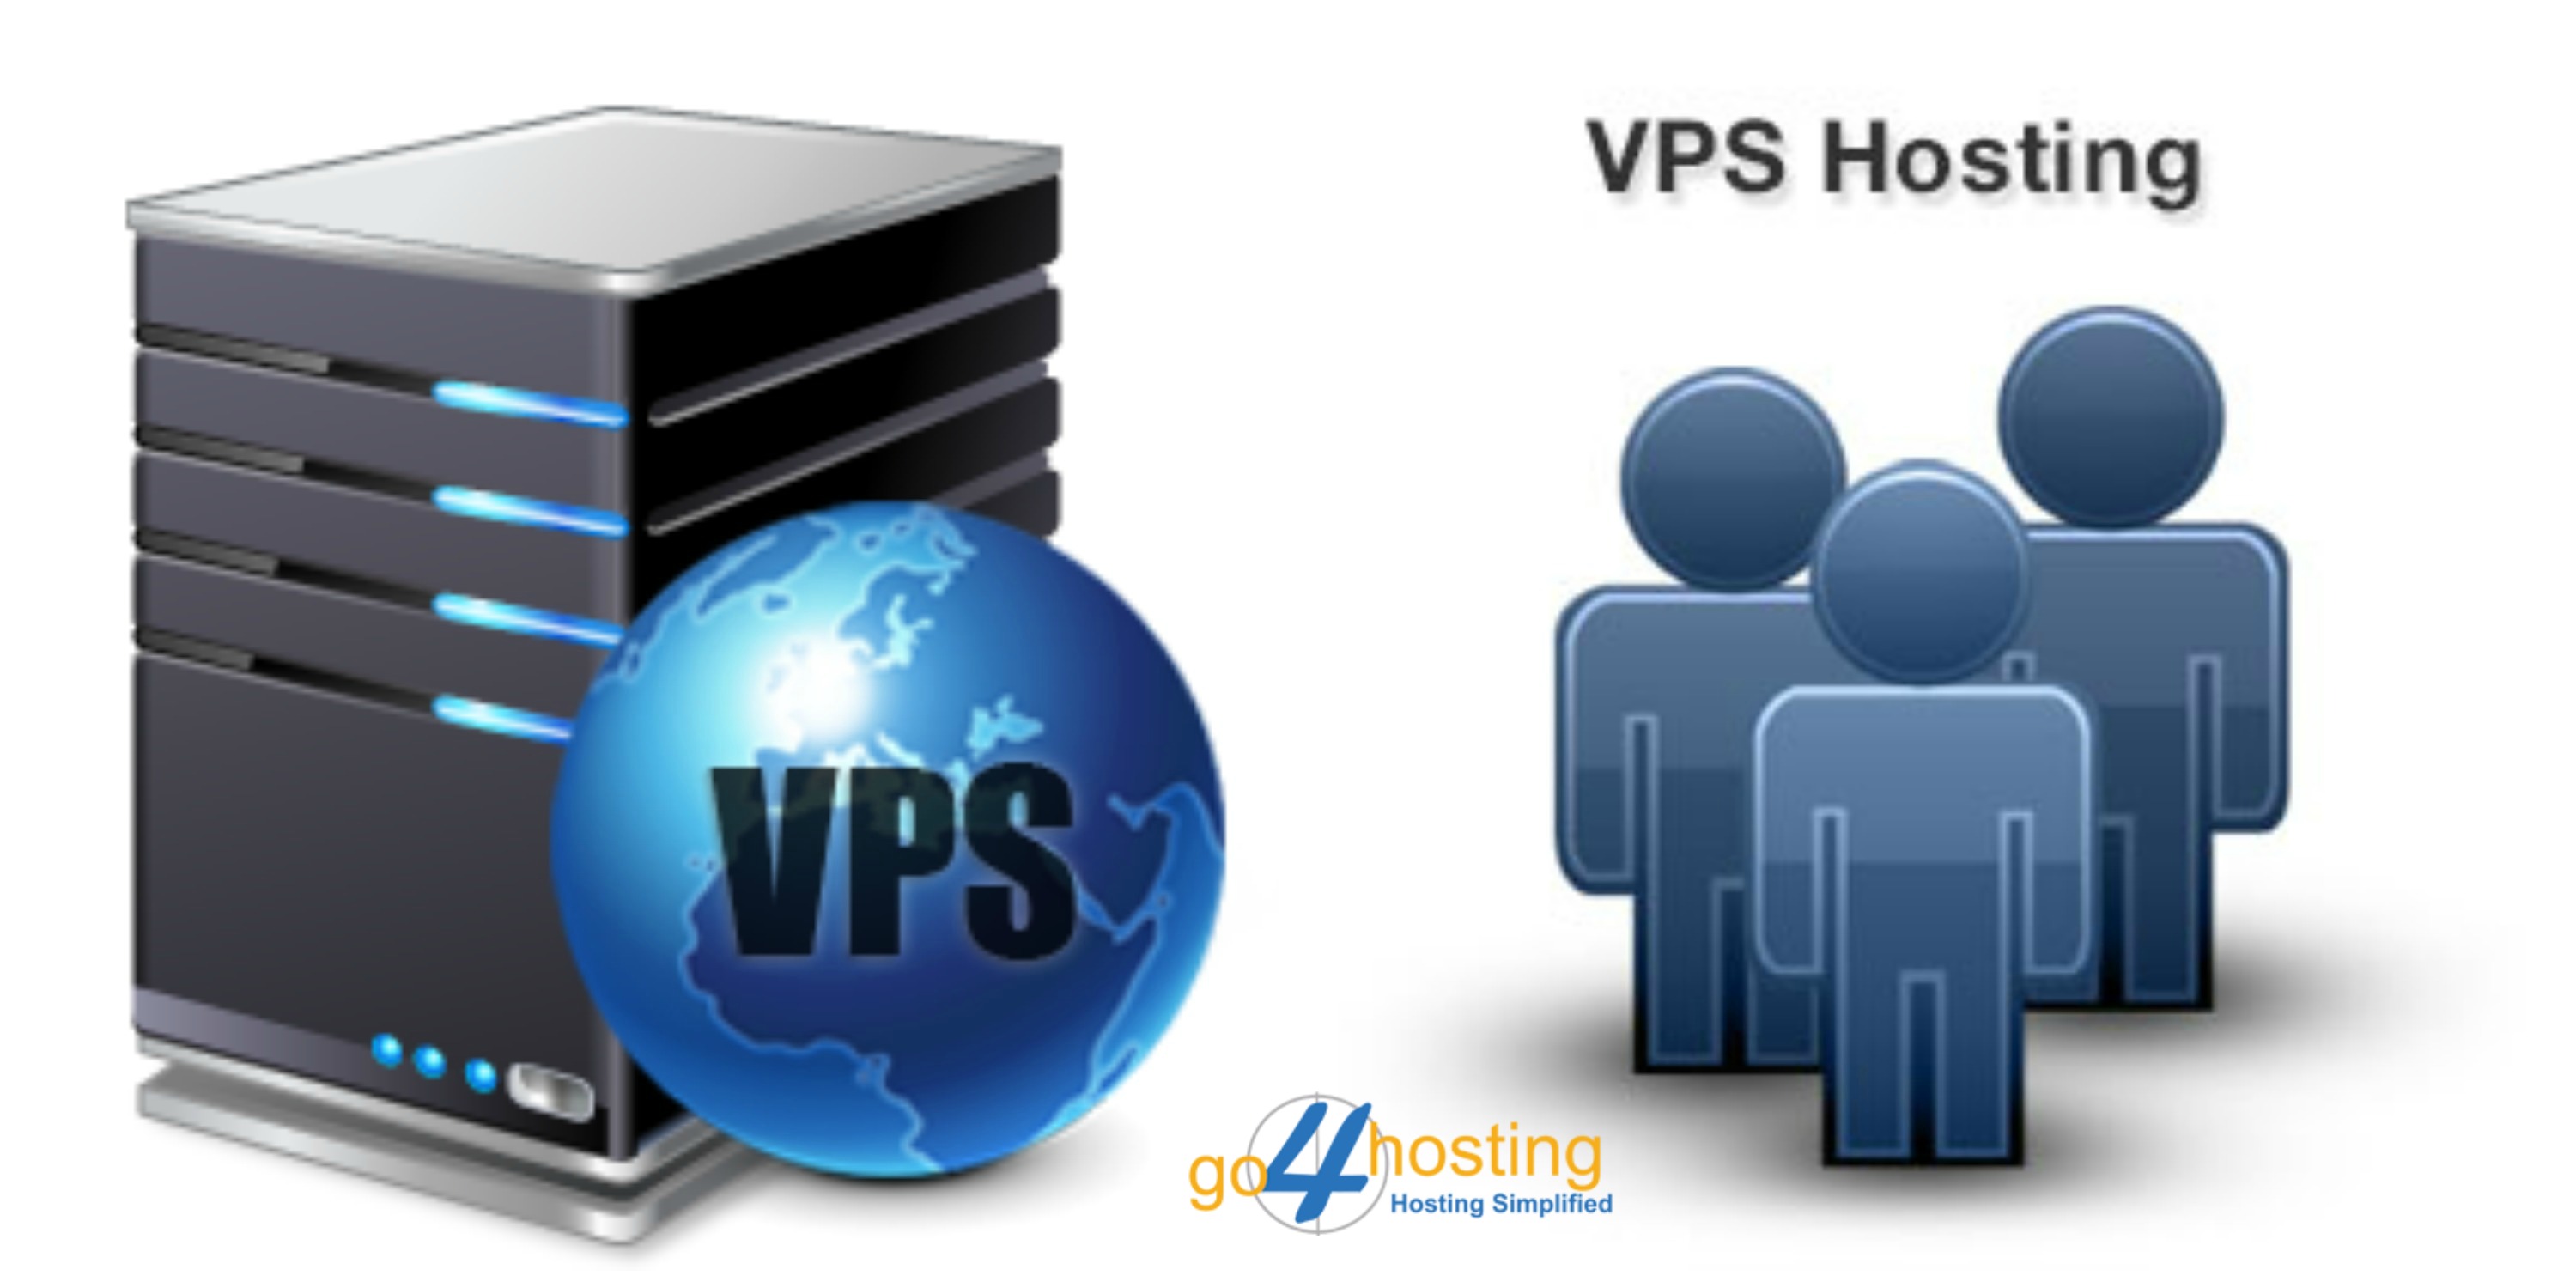 Vps hosting